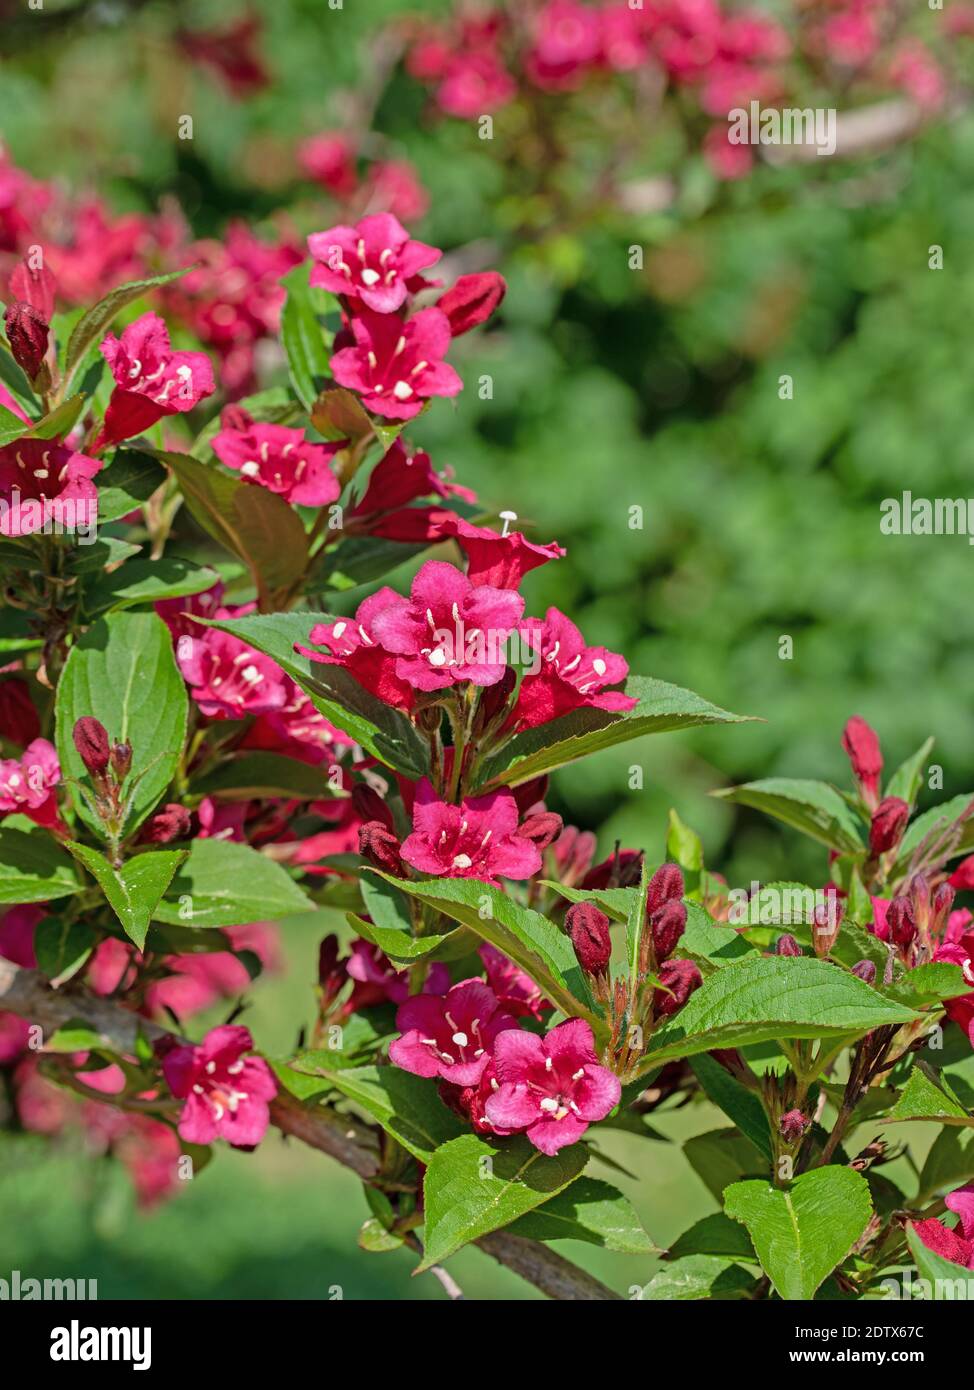 Flowering Weigelia, Weigela, in spring Stock Photo